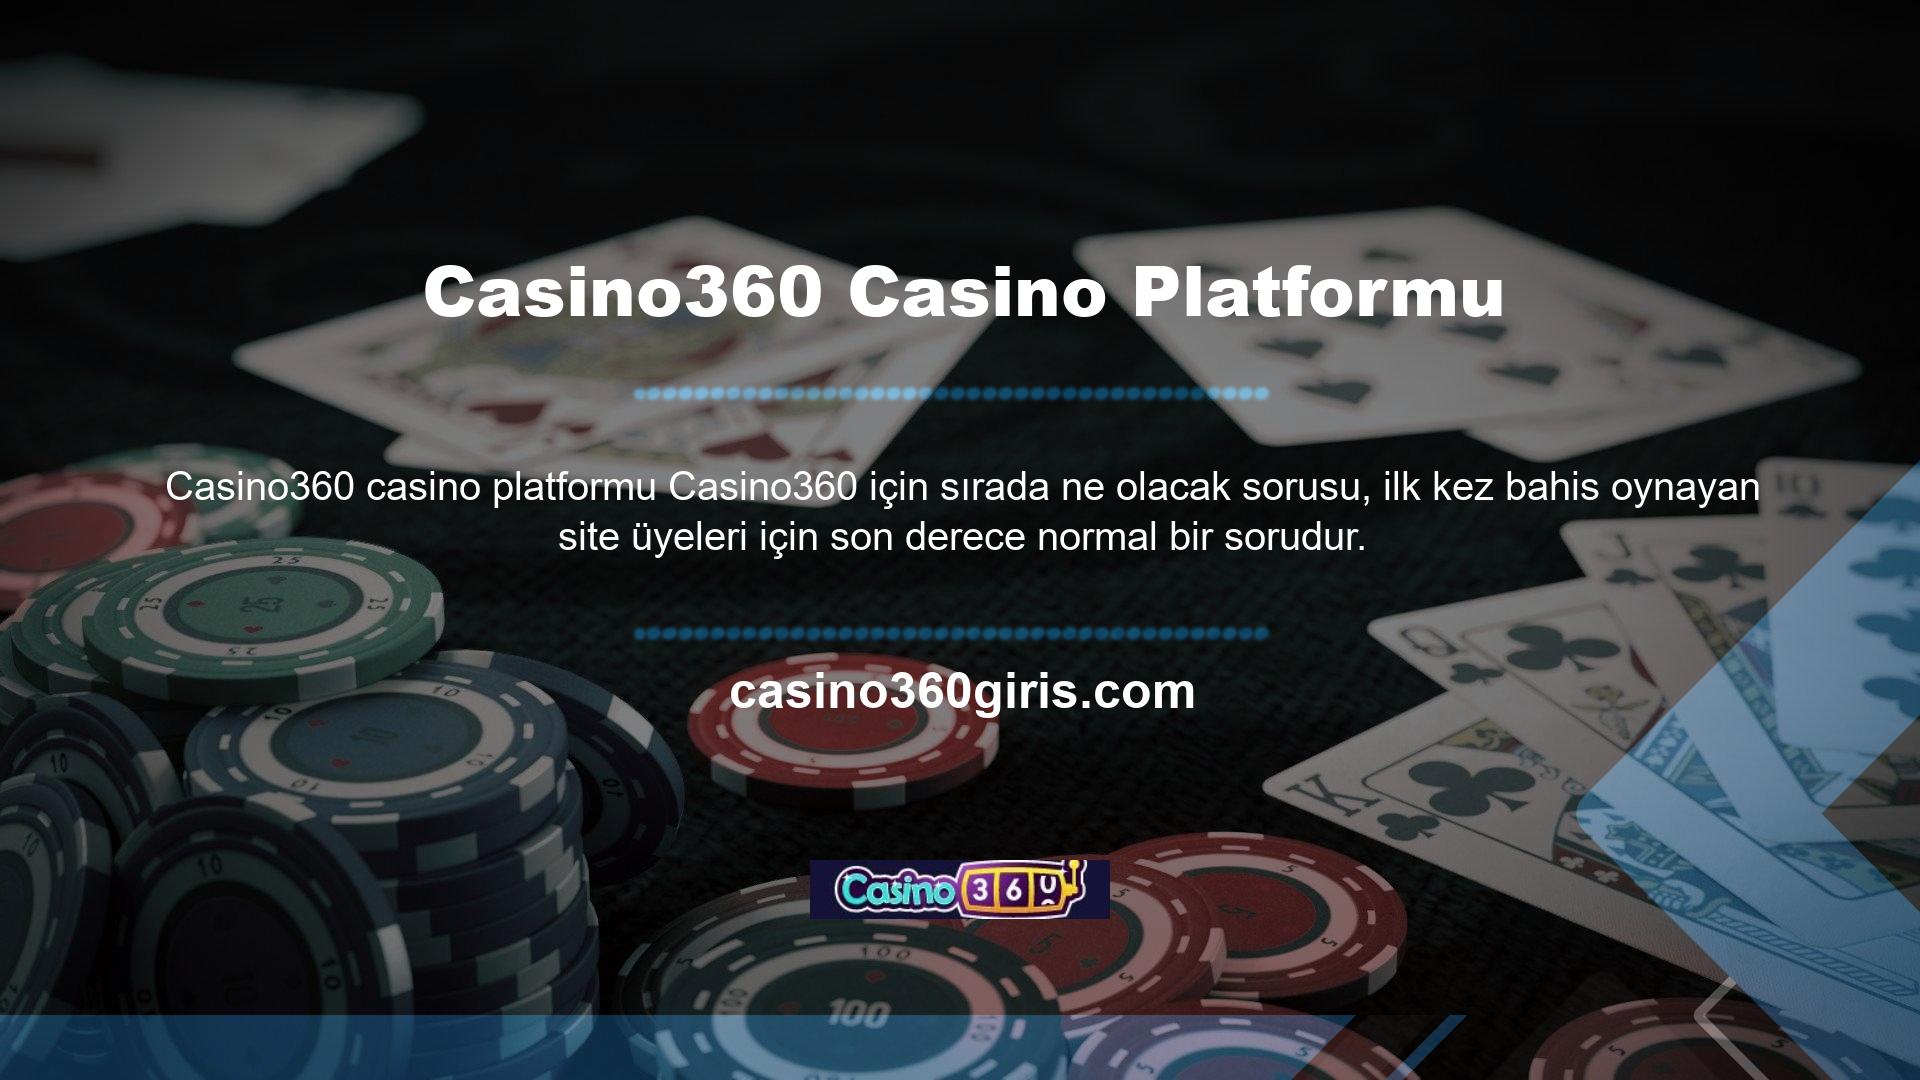 Bu sayede üyeler sitede yer alan Casino360 Casino platformunda işlem yaparken herhangi bir güven sorunu yaşamayacaklardır